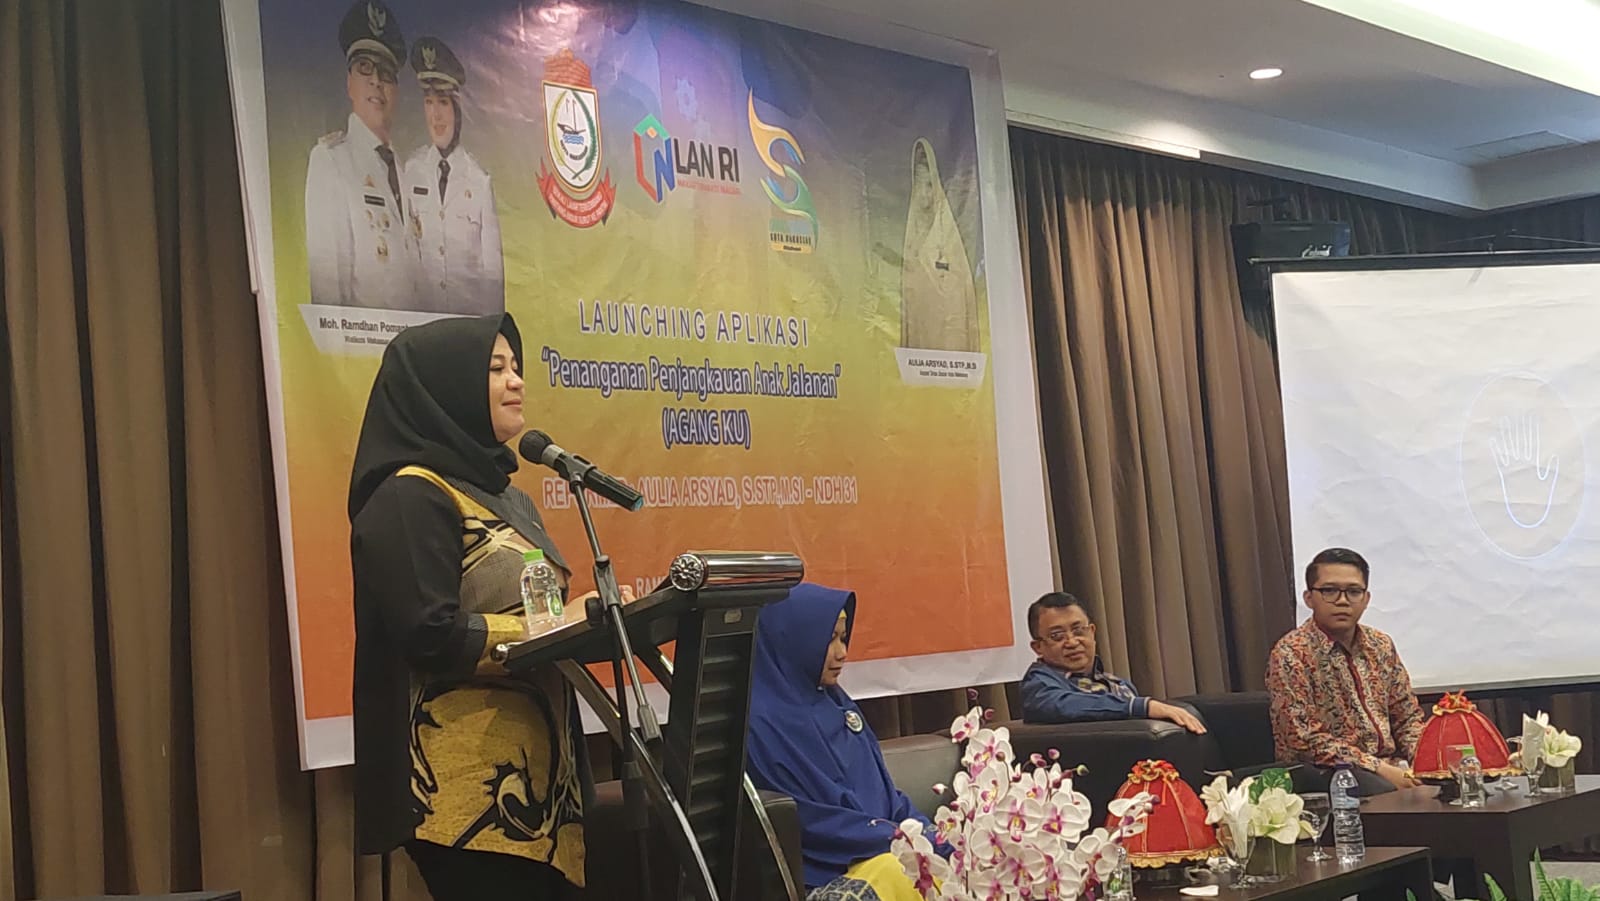 Atasi Persoalan Anjal dan Gepeng, Wakil Walikota Makassar Resmi Launching Aplikasi “Agang’ku”